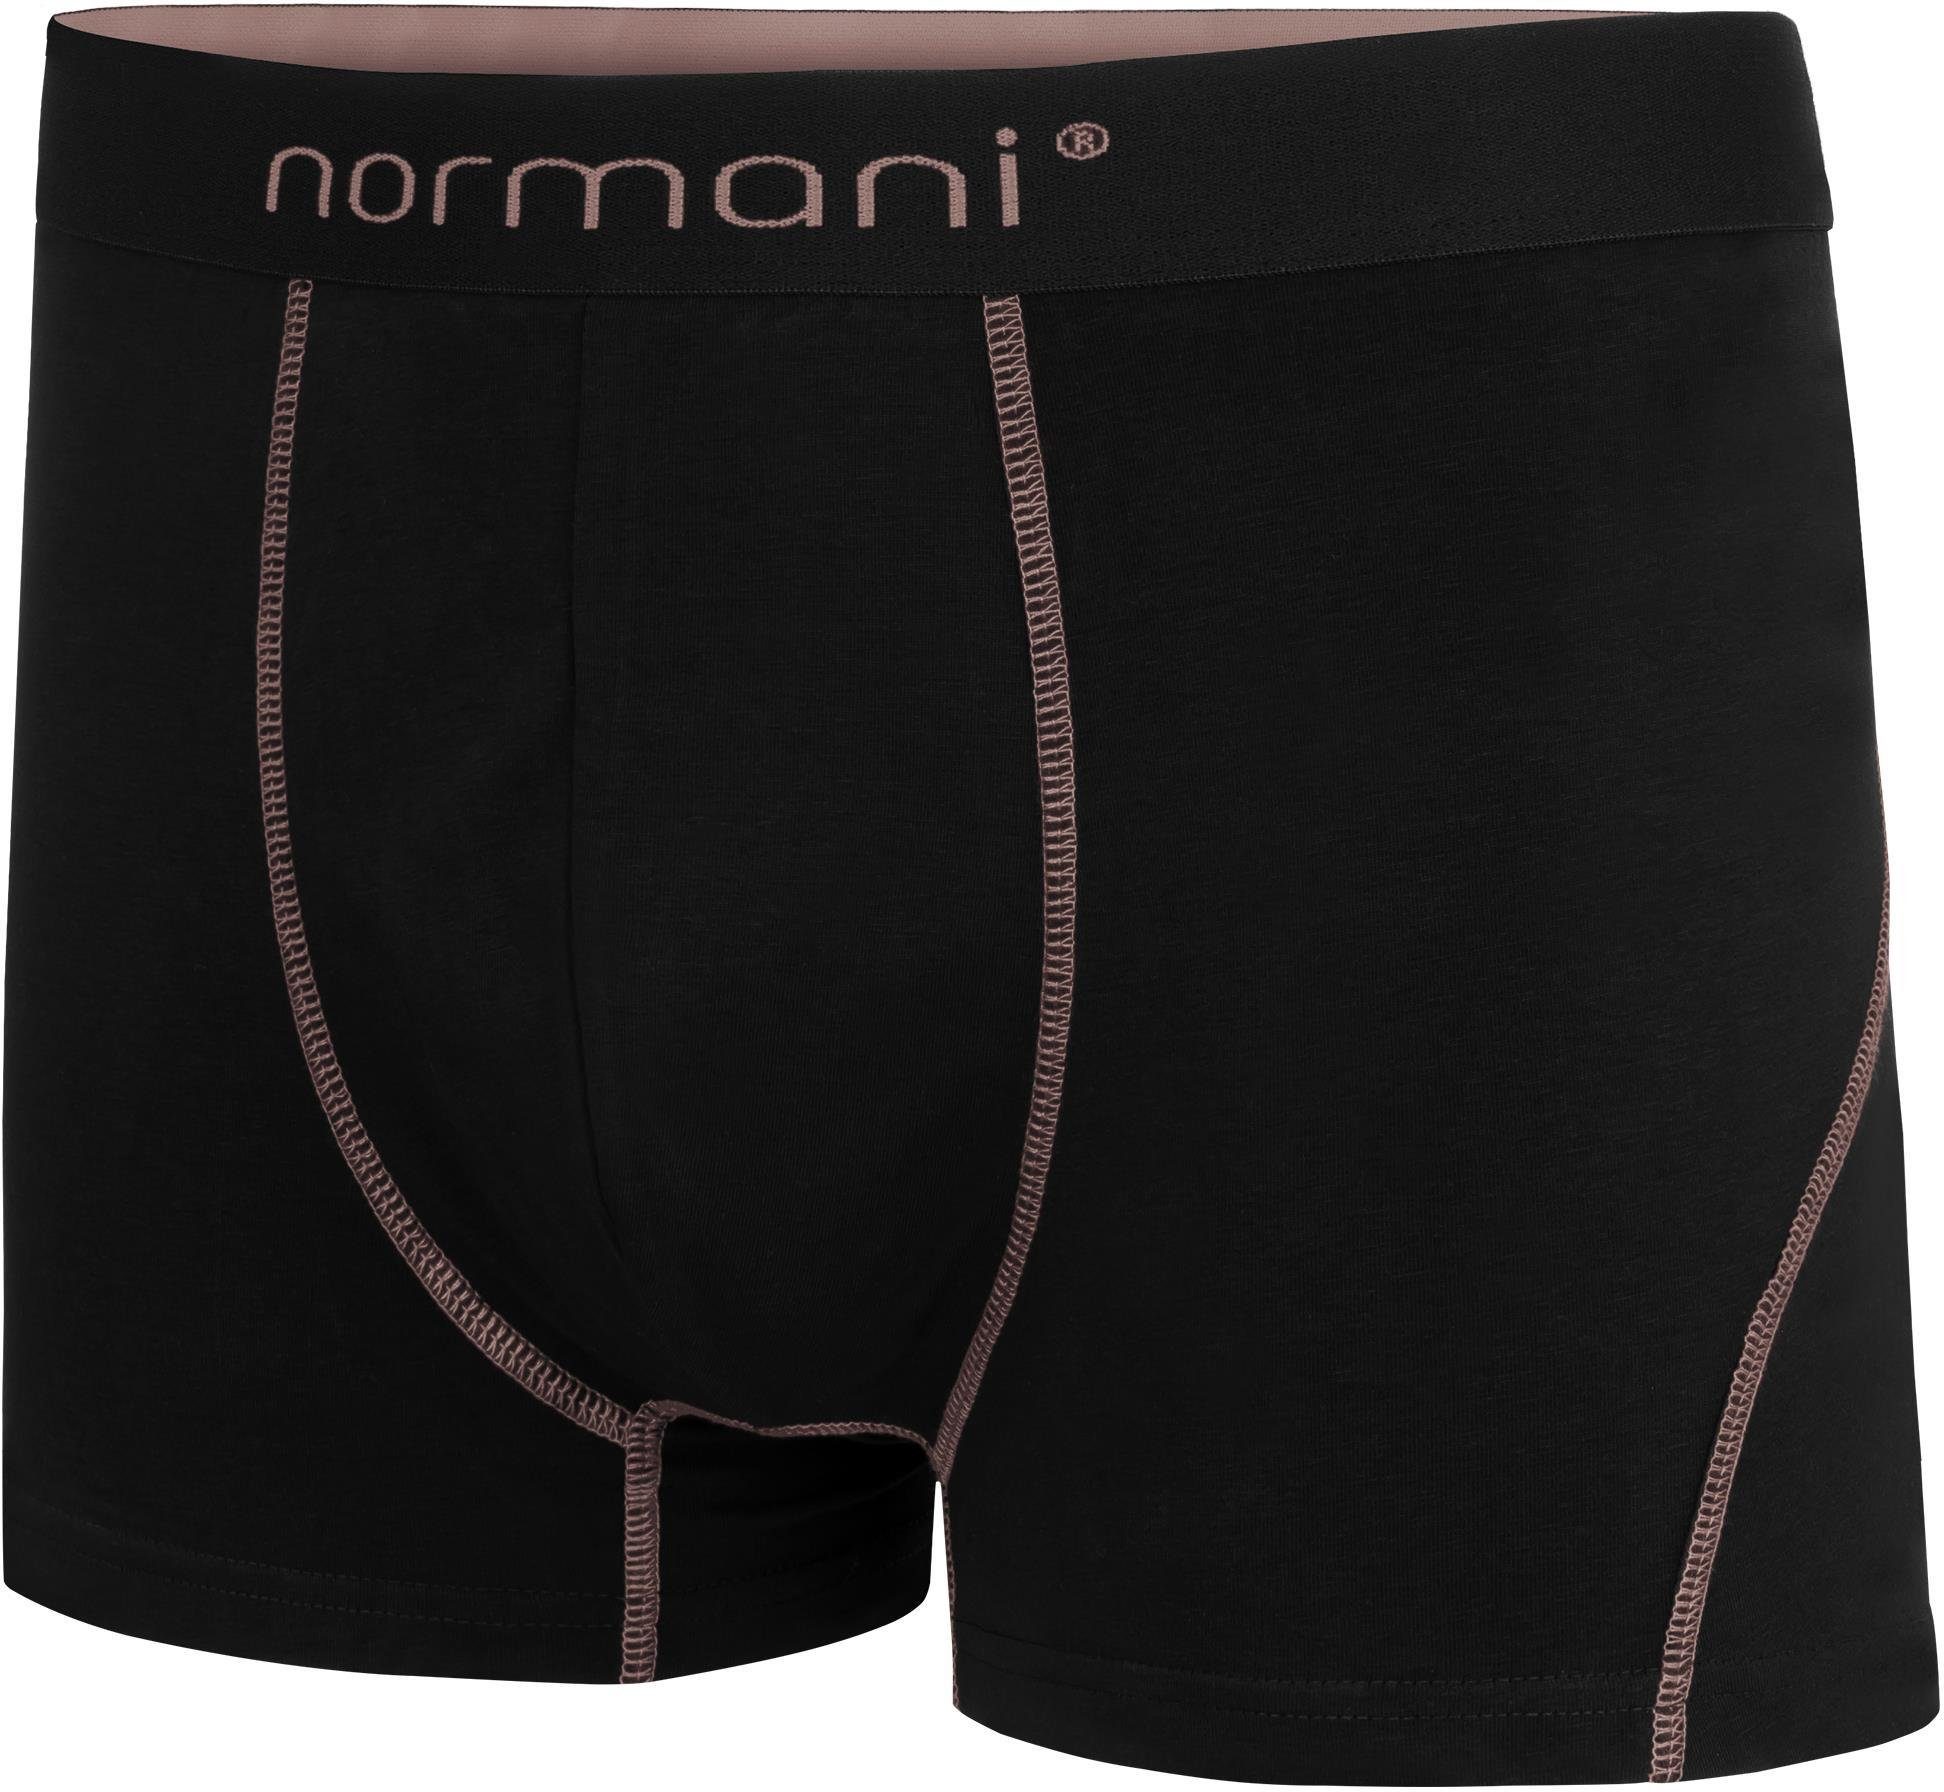 Herren Stanley normani aus Unterhose atmungsaktiver Lachs Baumwolle Boxershorts 2 für Männer Boxershorts